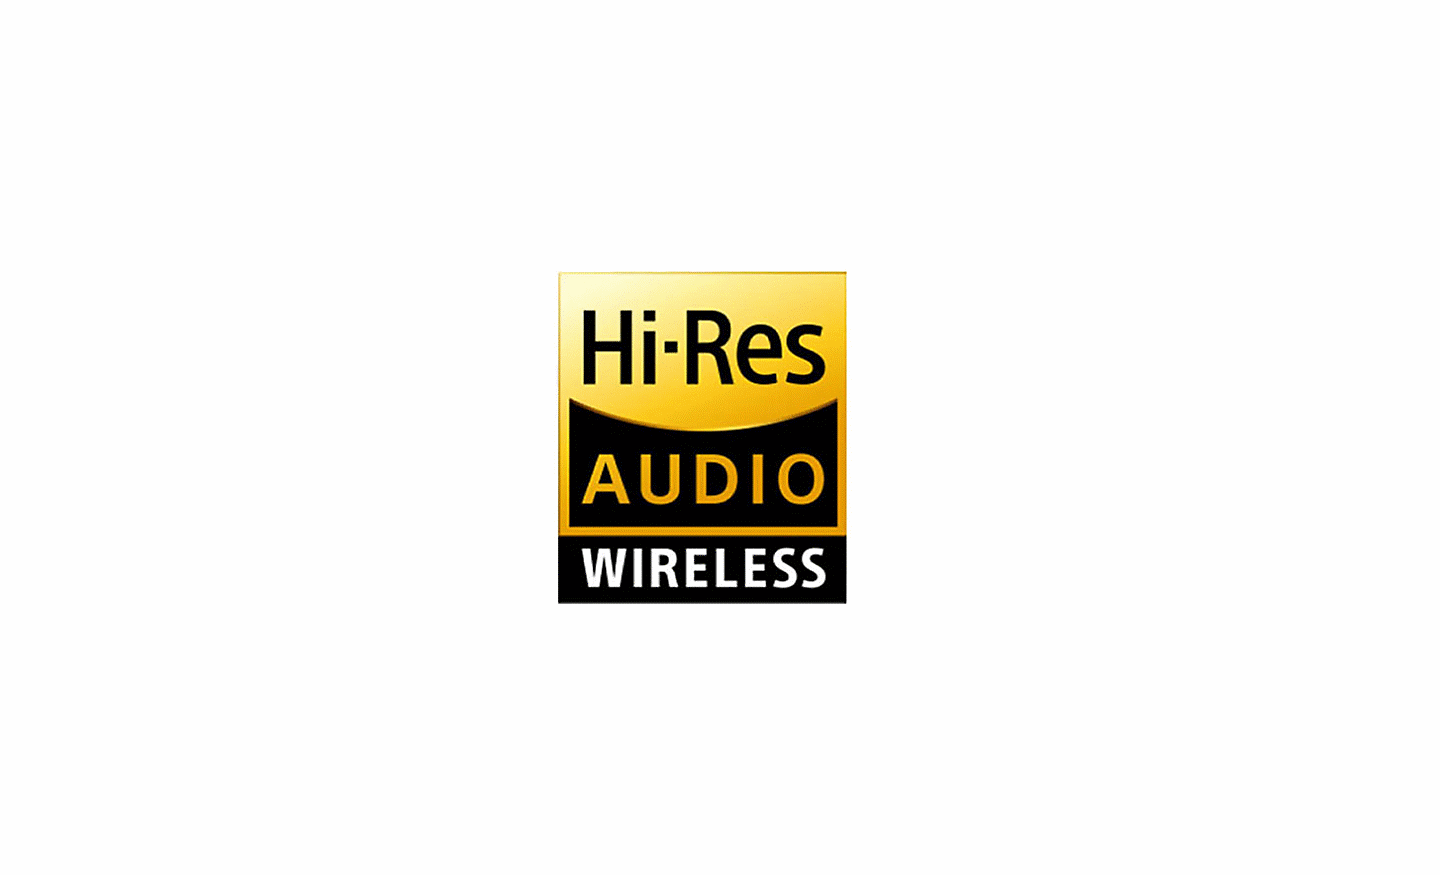 Hình ảnh logo Hi-Res Audio Wireless